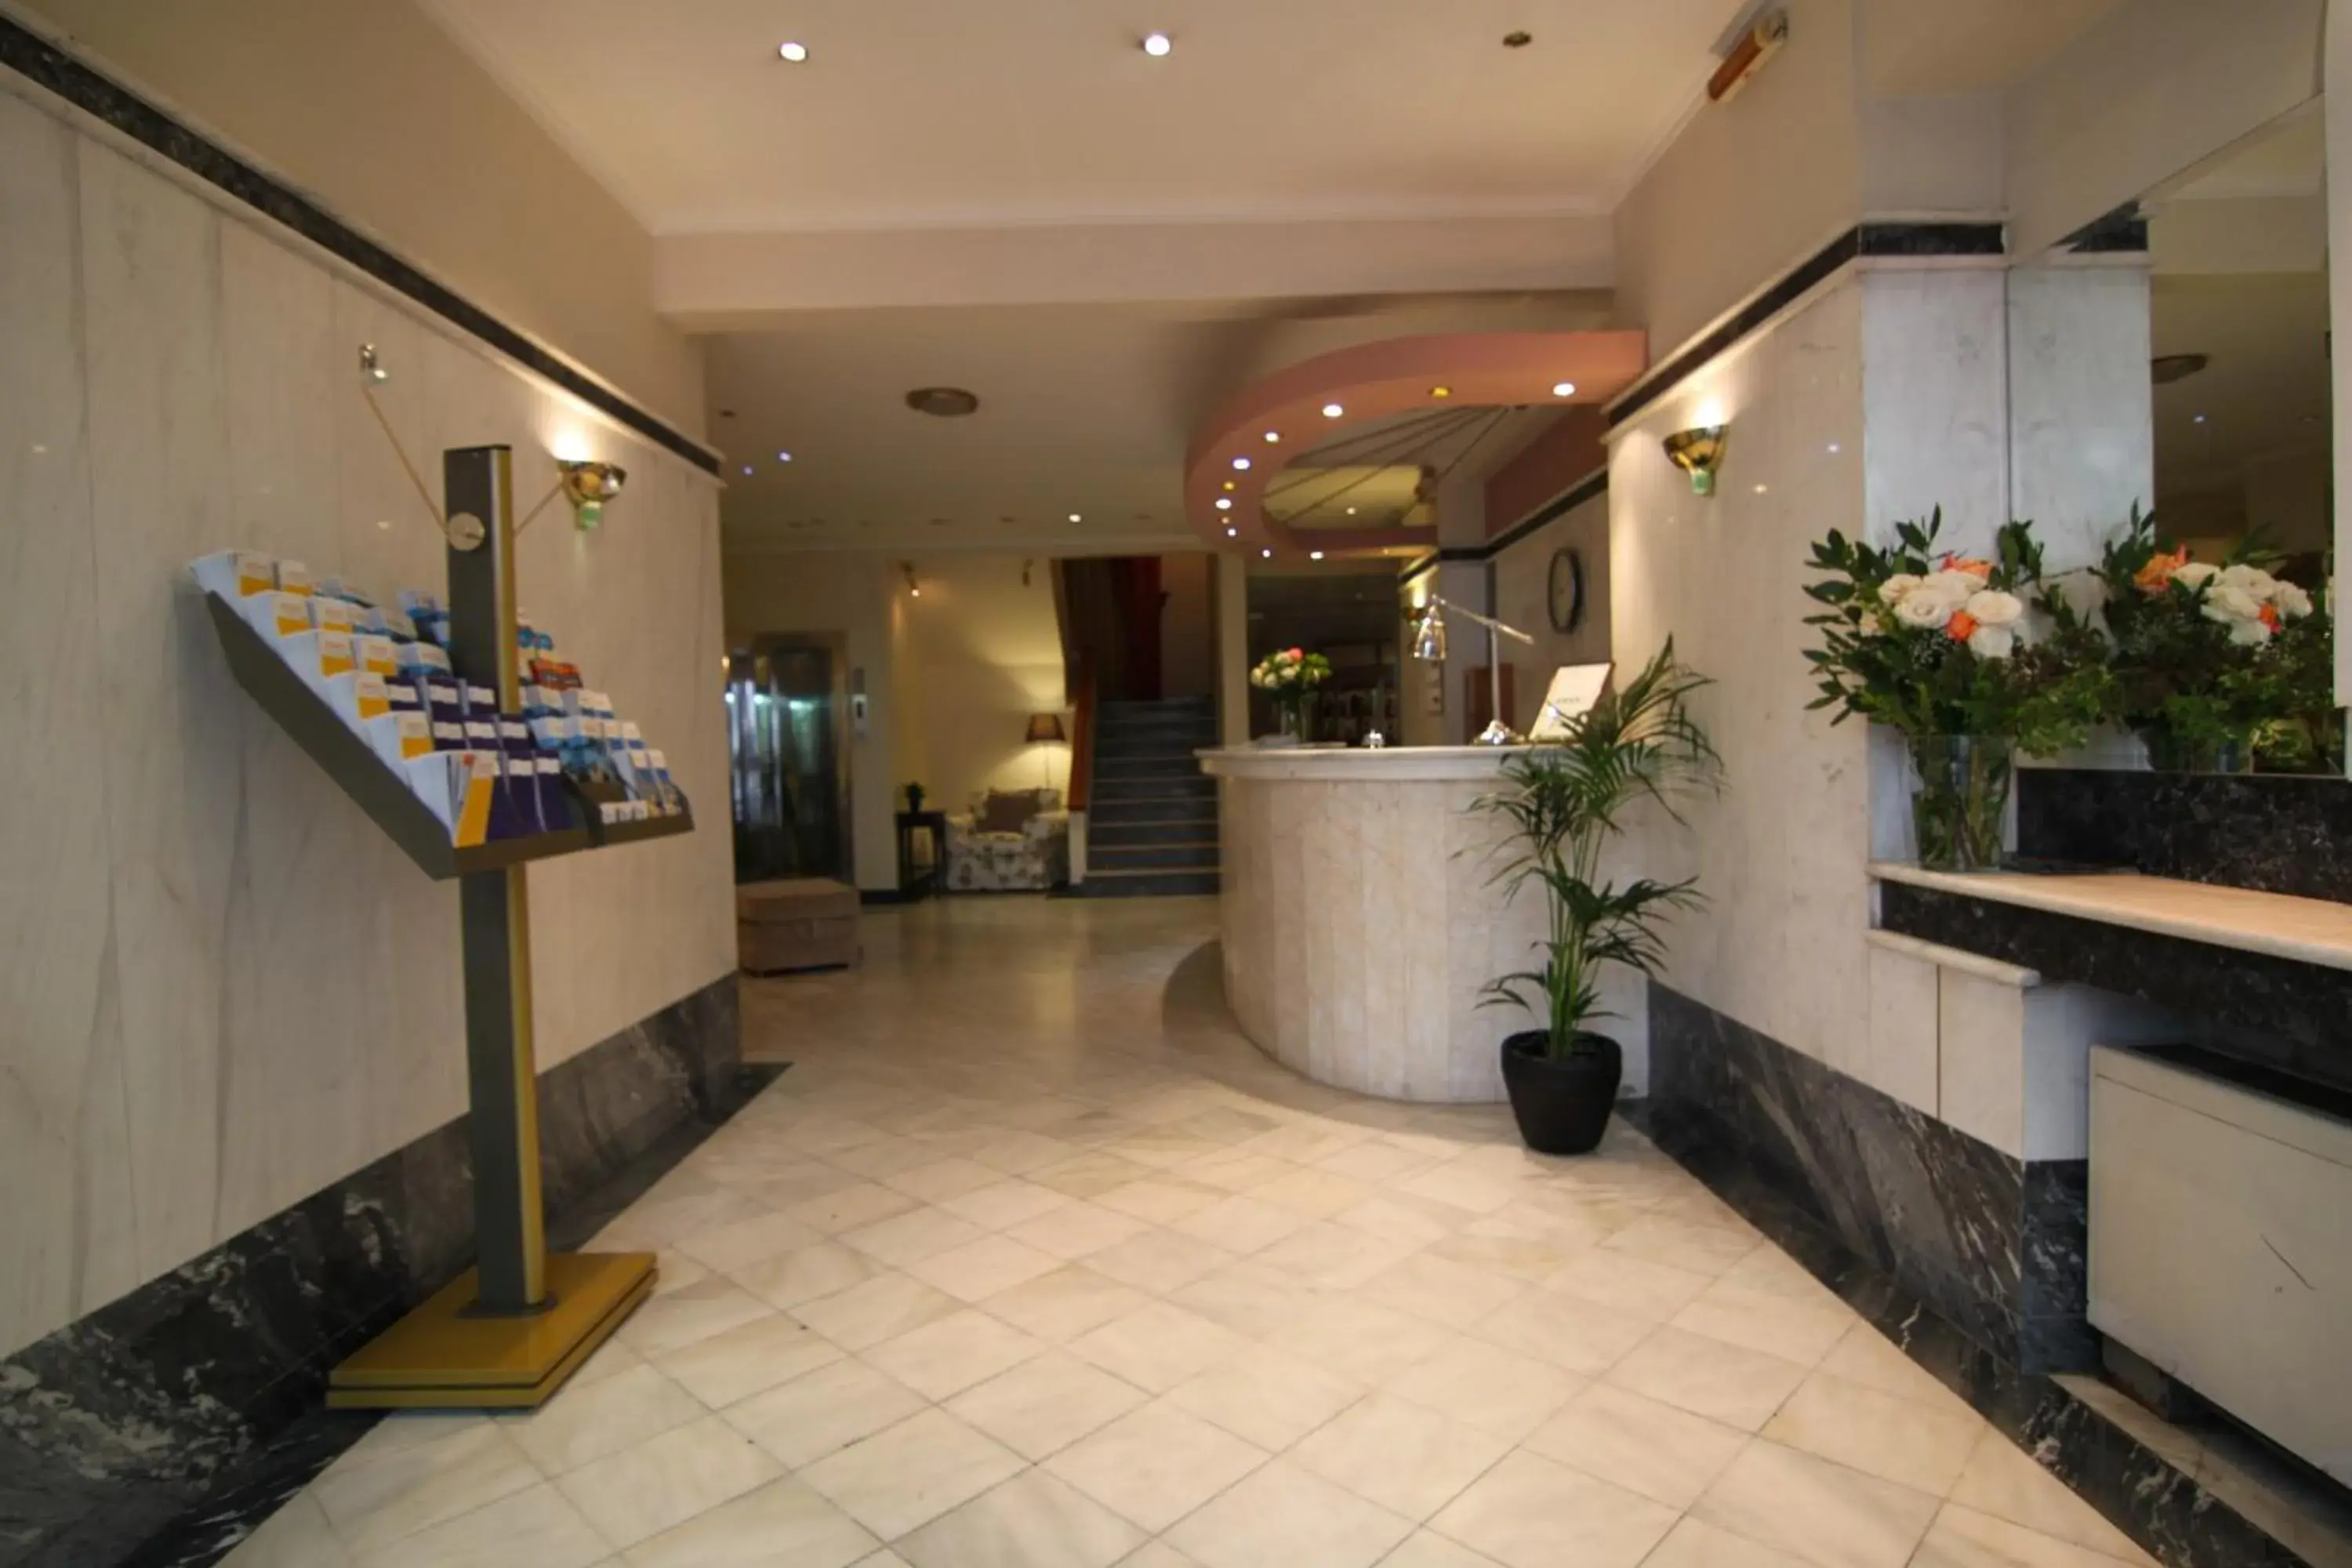 Lobby or reception, Lobby/Reception in Achillion Hotel